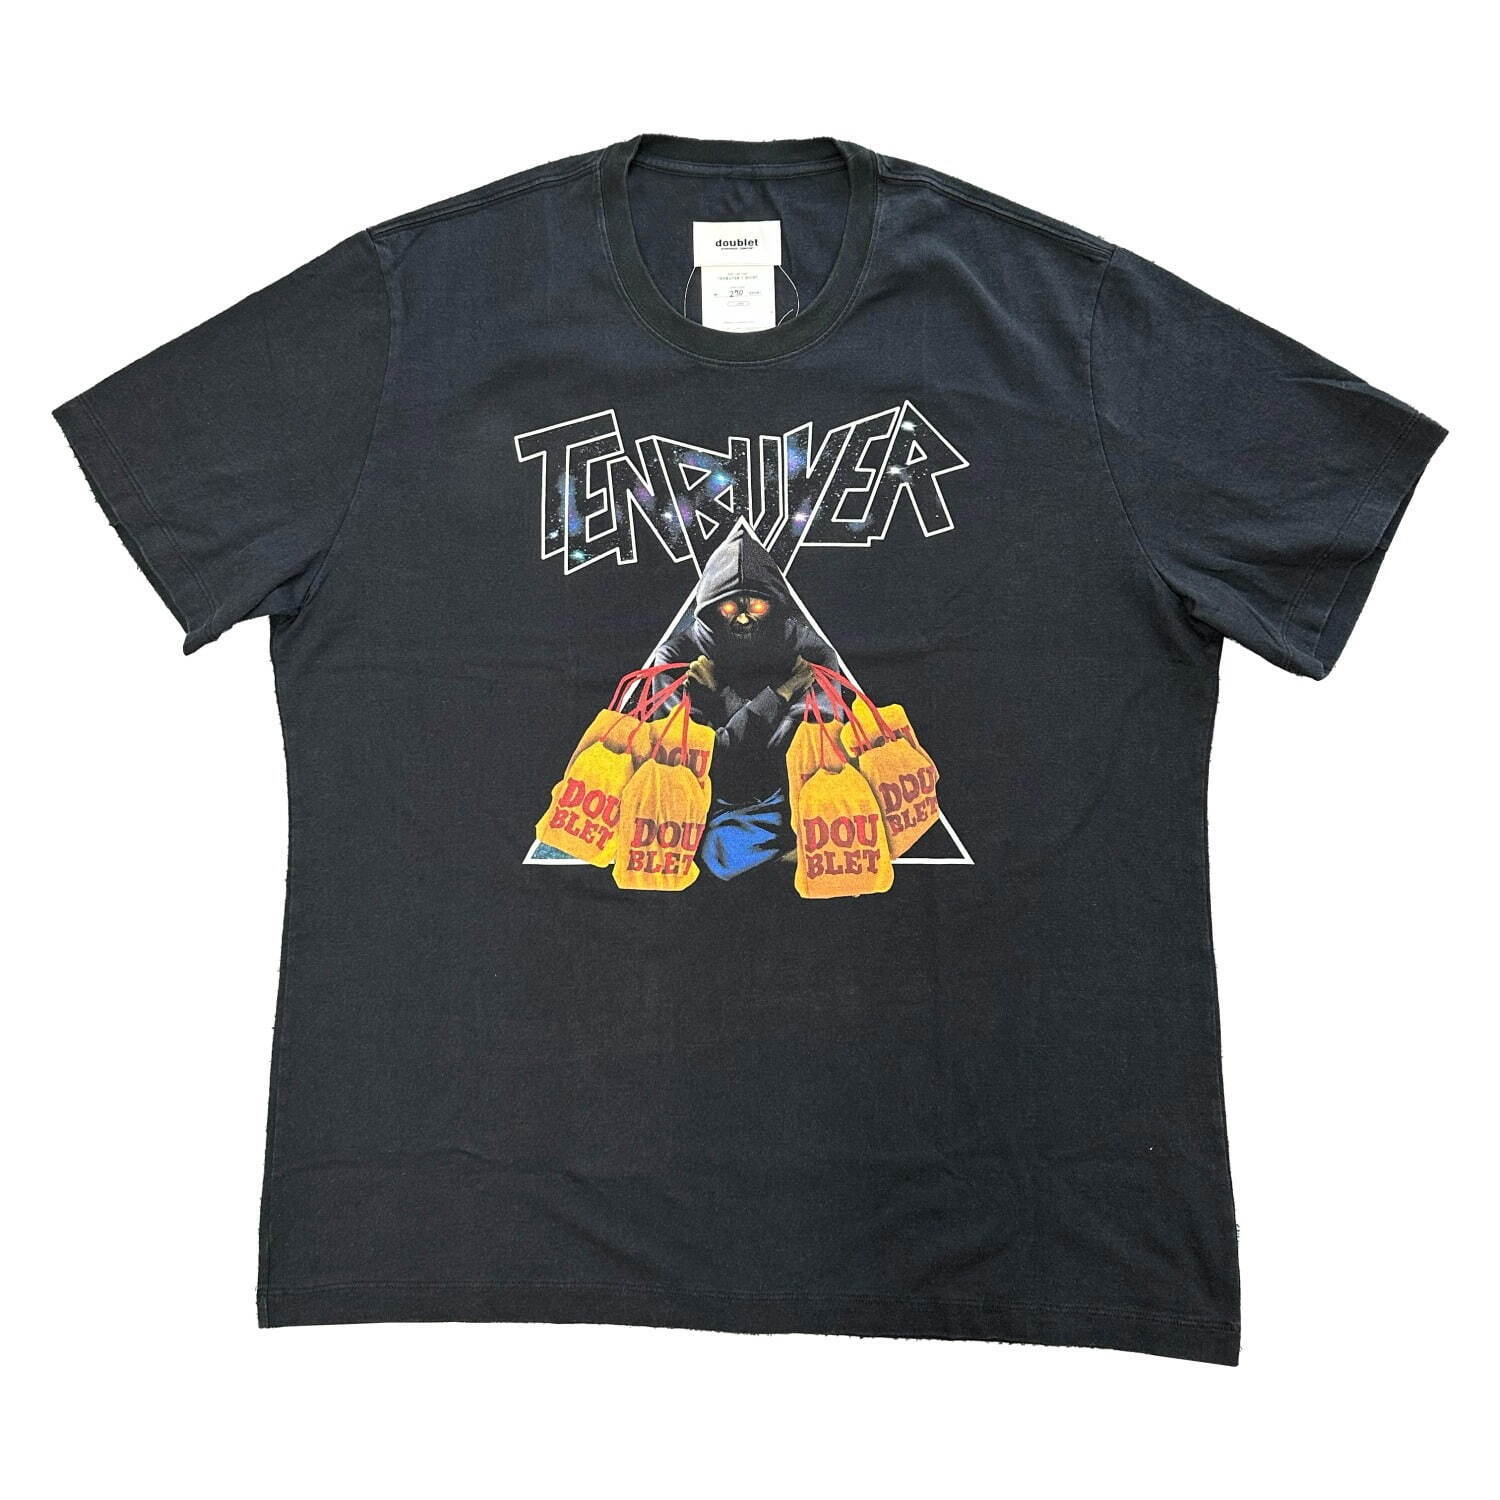 「転売ヤーTシャツ」16,000円